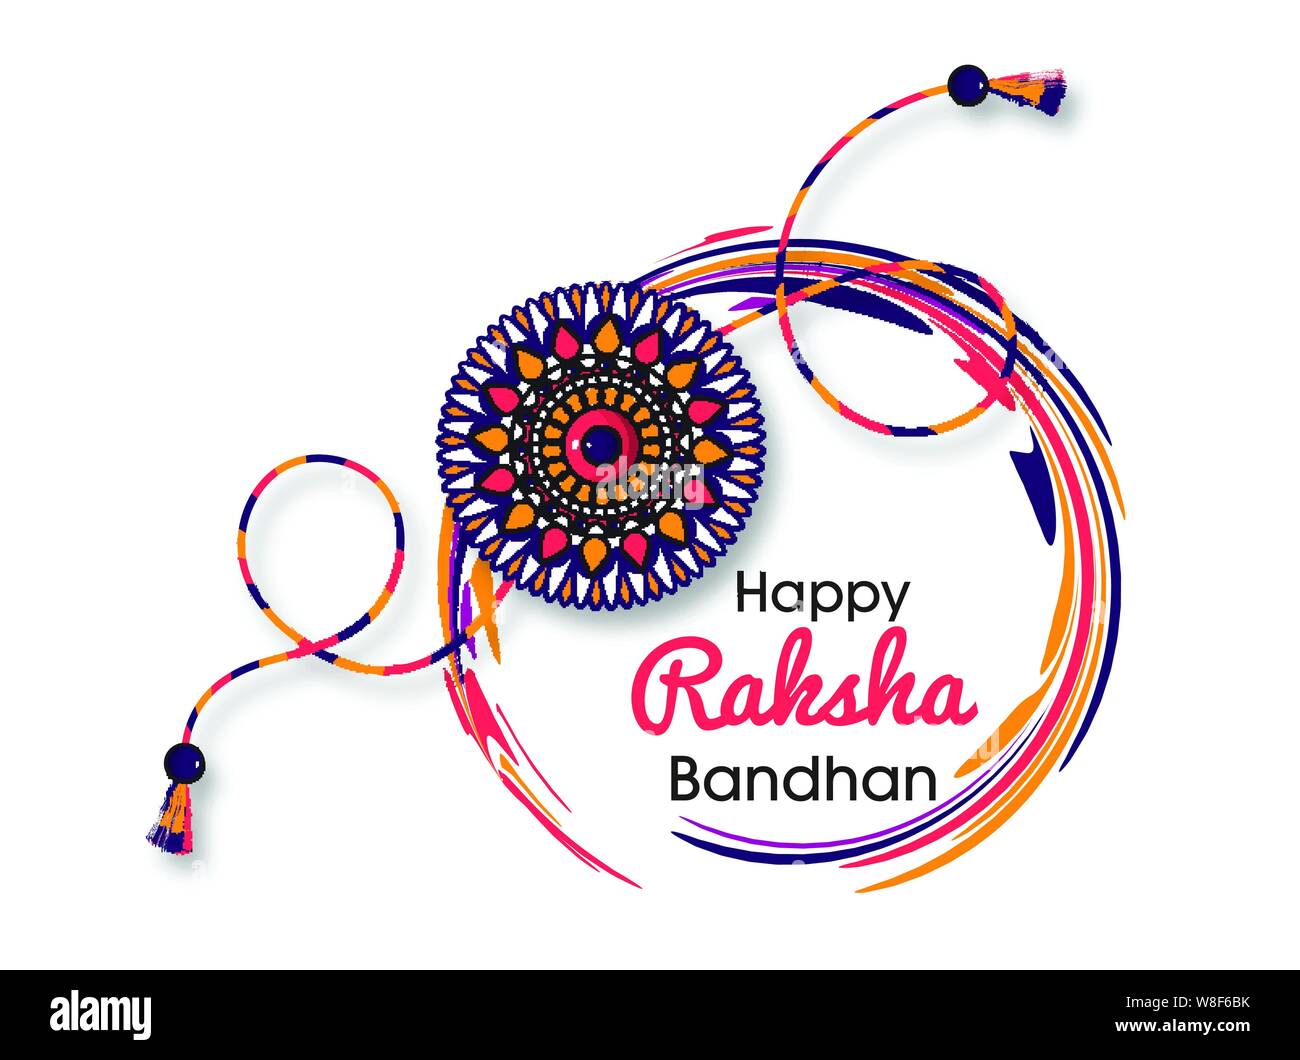 Happy Raksha Bandhan greeting card. Indian holiday invitation or ...